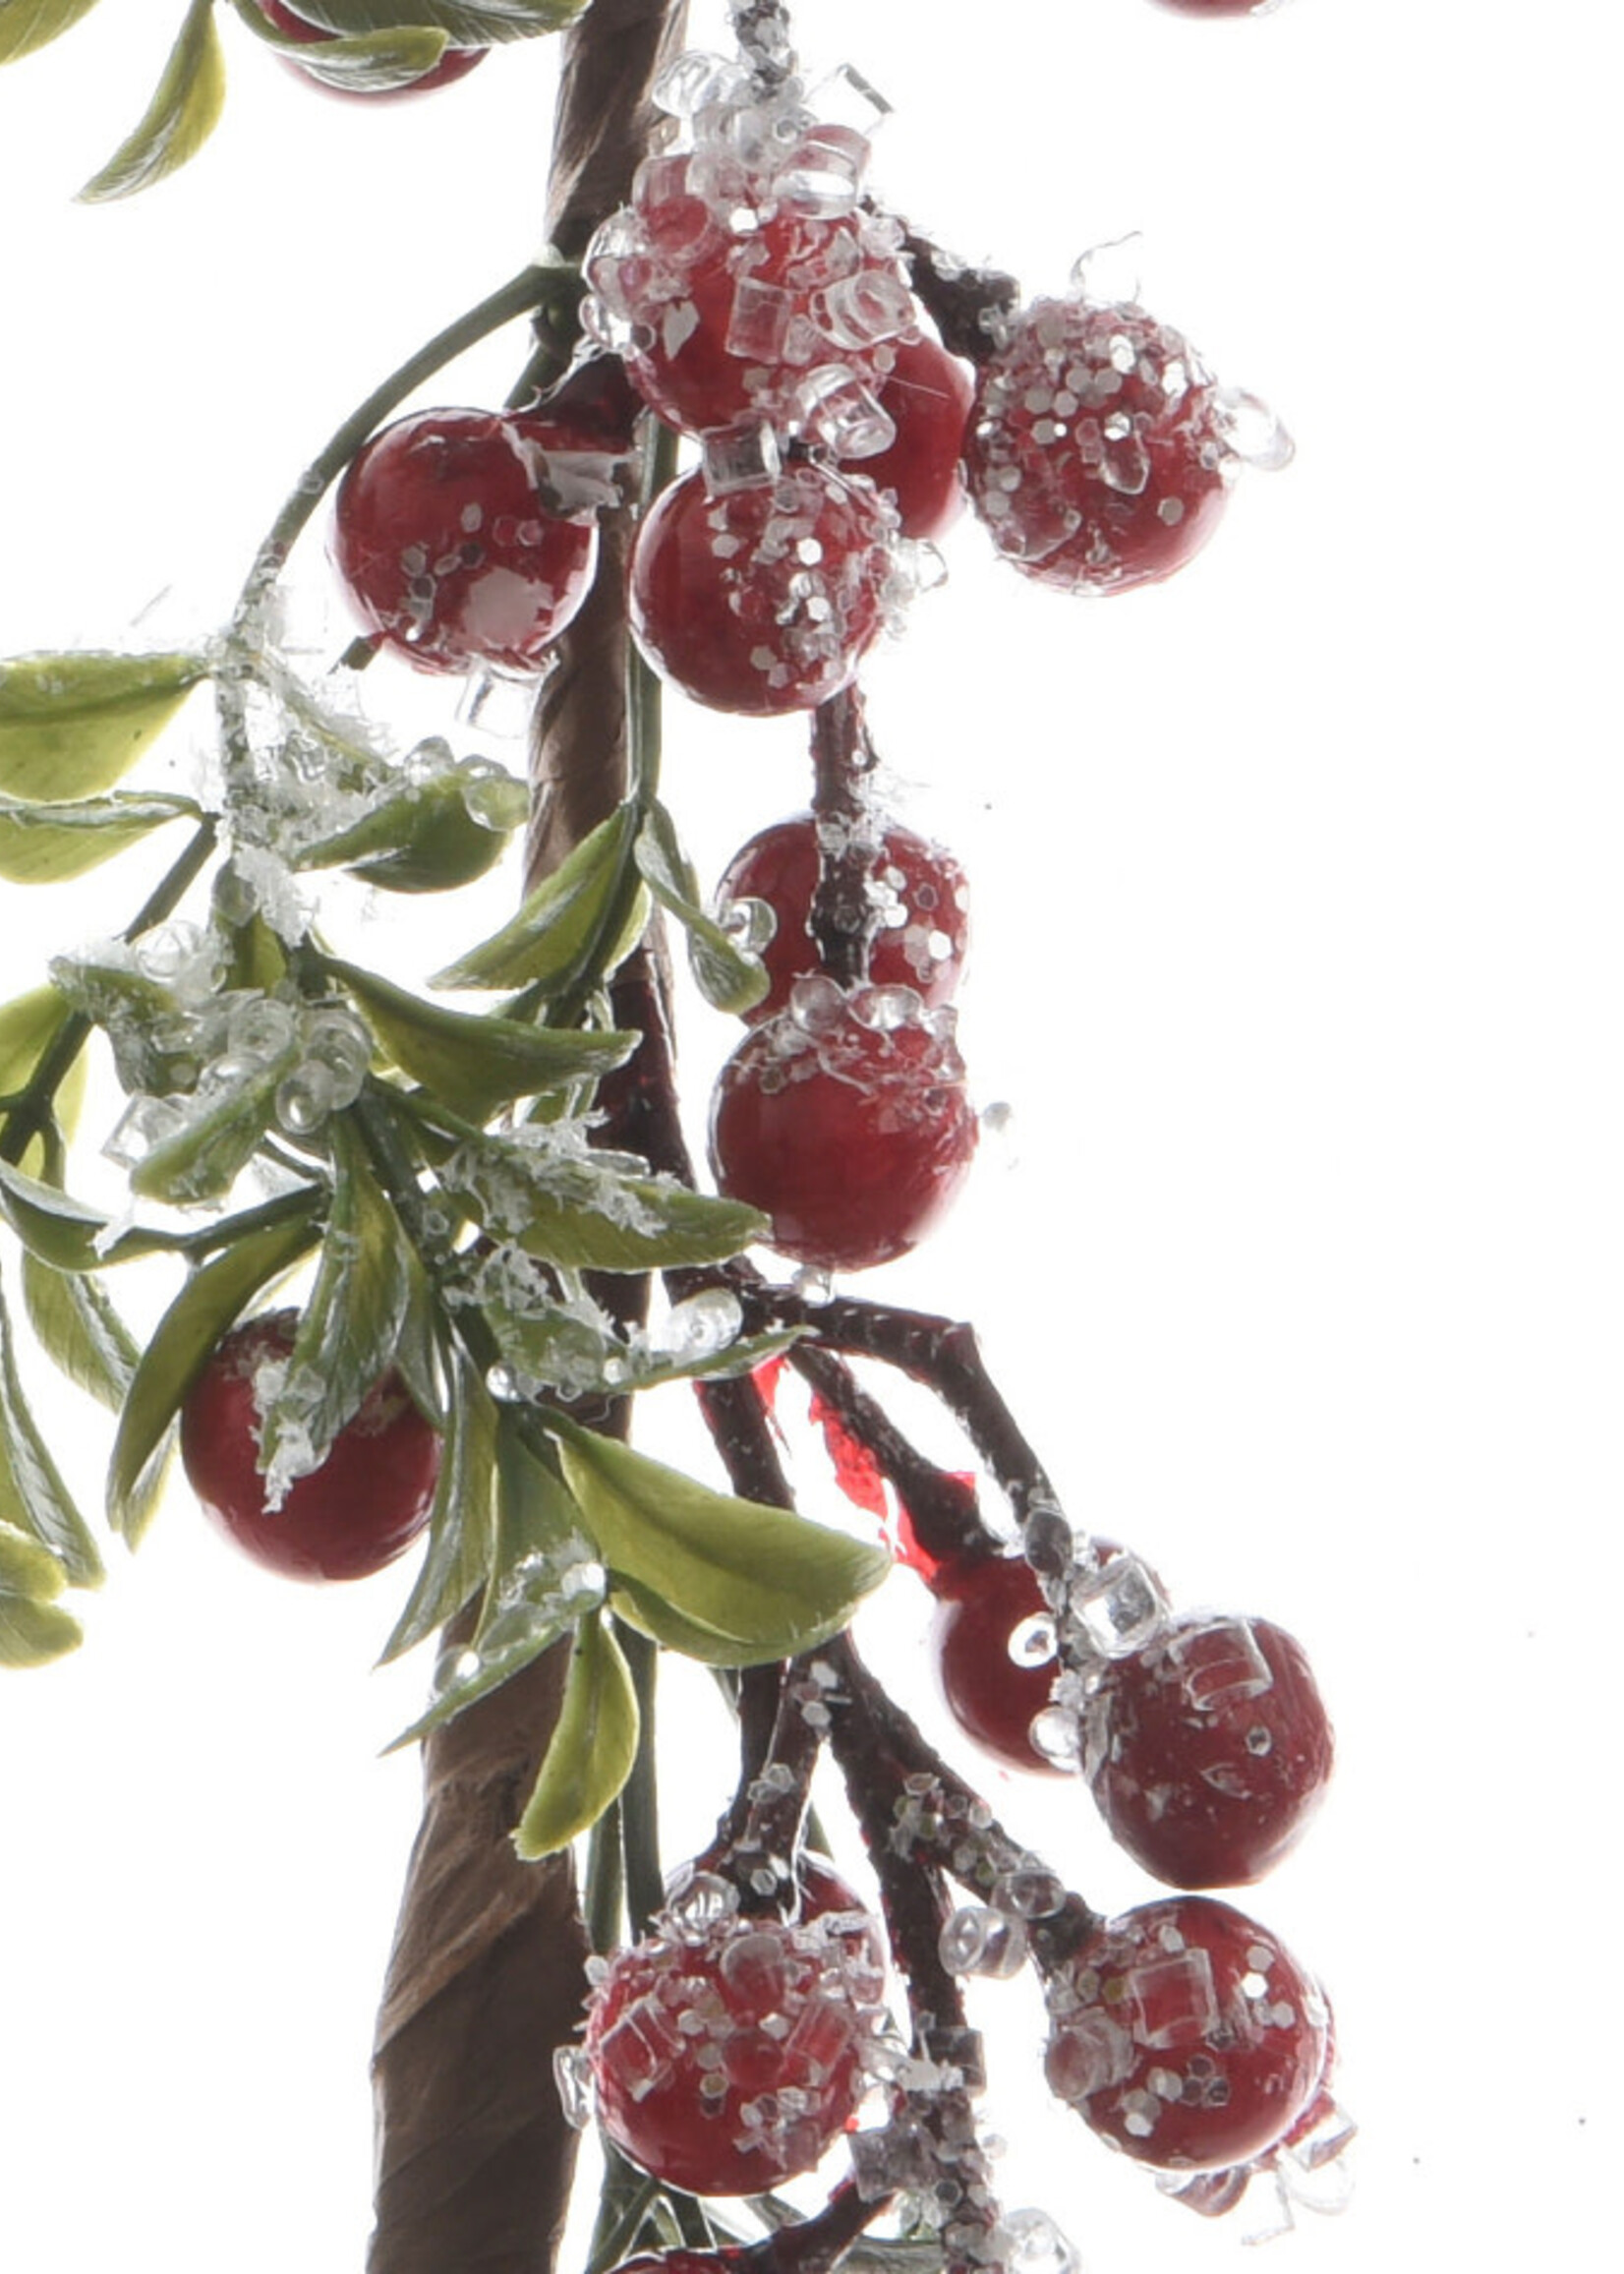 Decoris Garland with Berries 1.3m